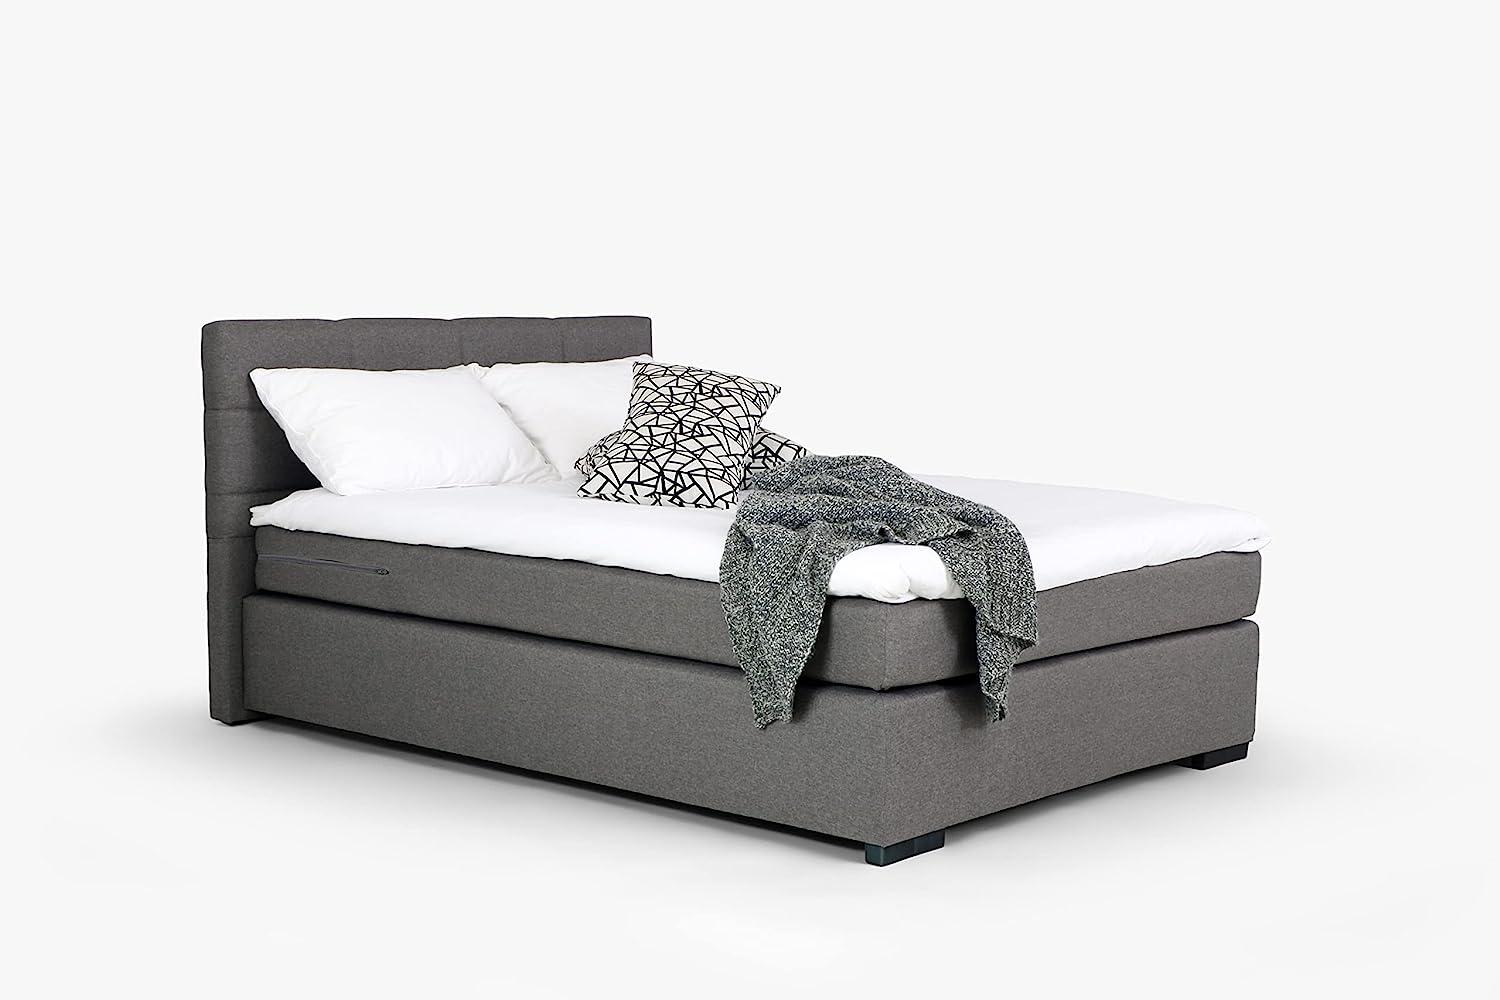 Mivano Beast Boxbett, Komfortables Bett mit Durchgehender Matratze (H3) und Topper, Flachgewebe Karoo Grau, Liegefläche 120 x 200 cm Bild 1